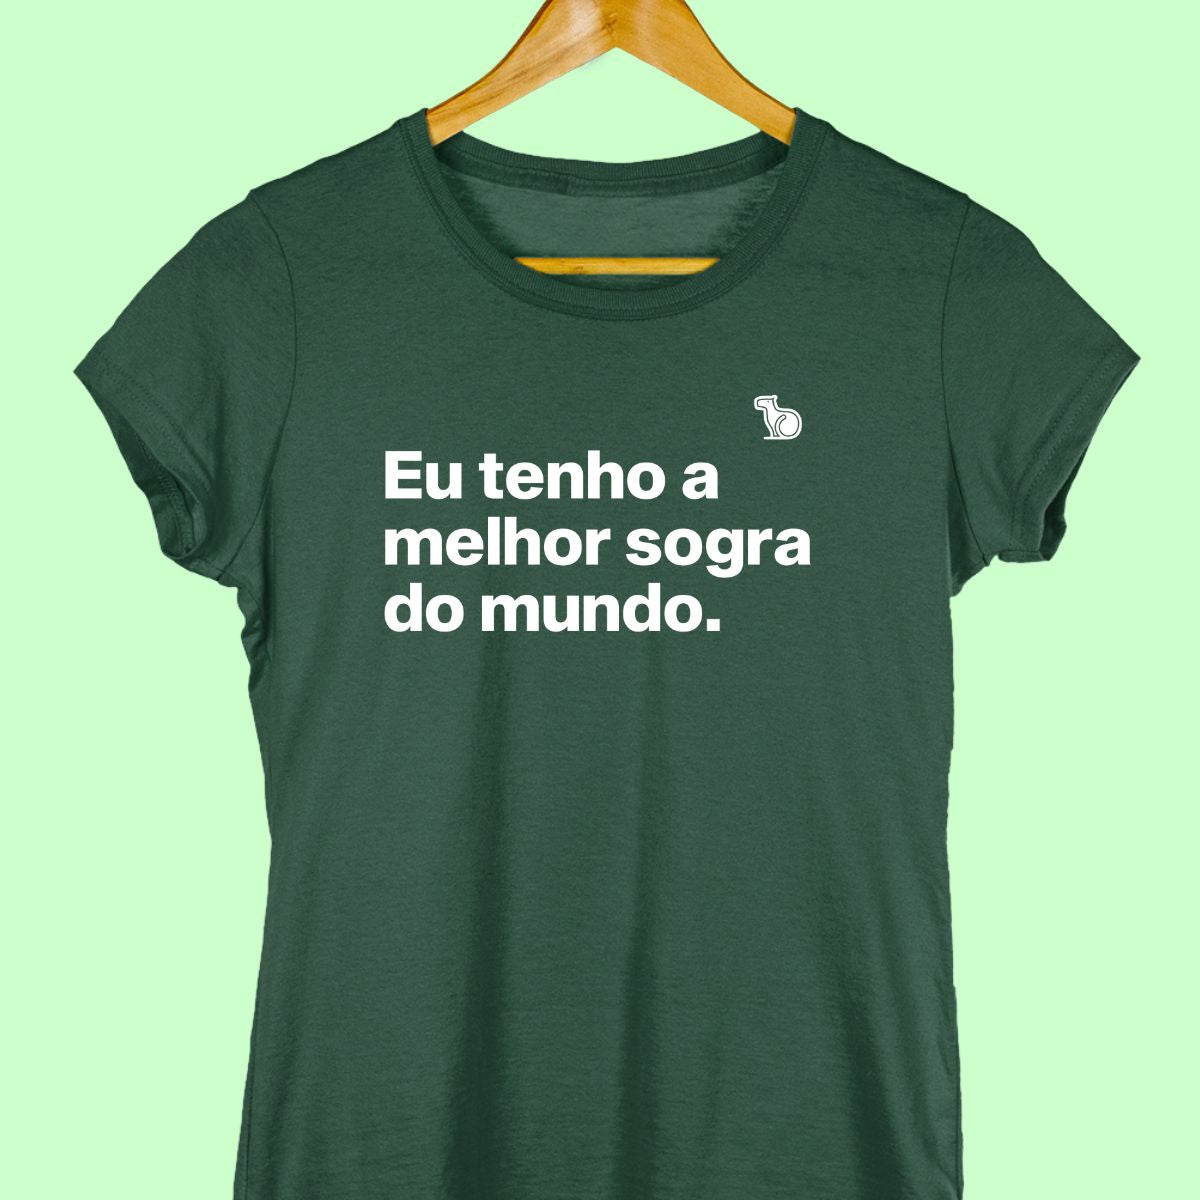 Camiseta com a frase "Eu tenho a melhor sogra do mundo." feminina verde.